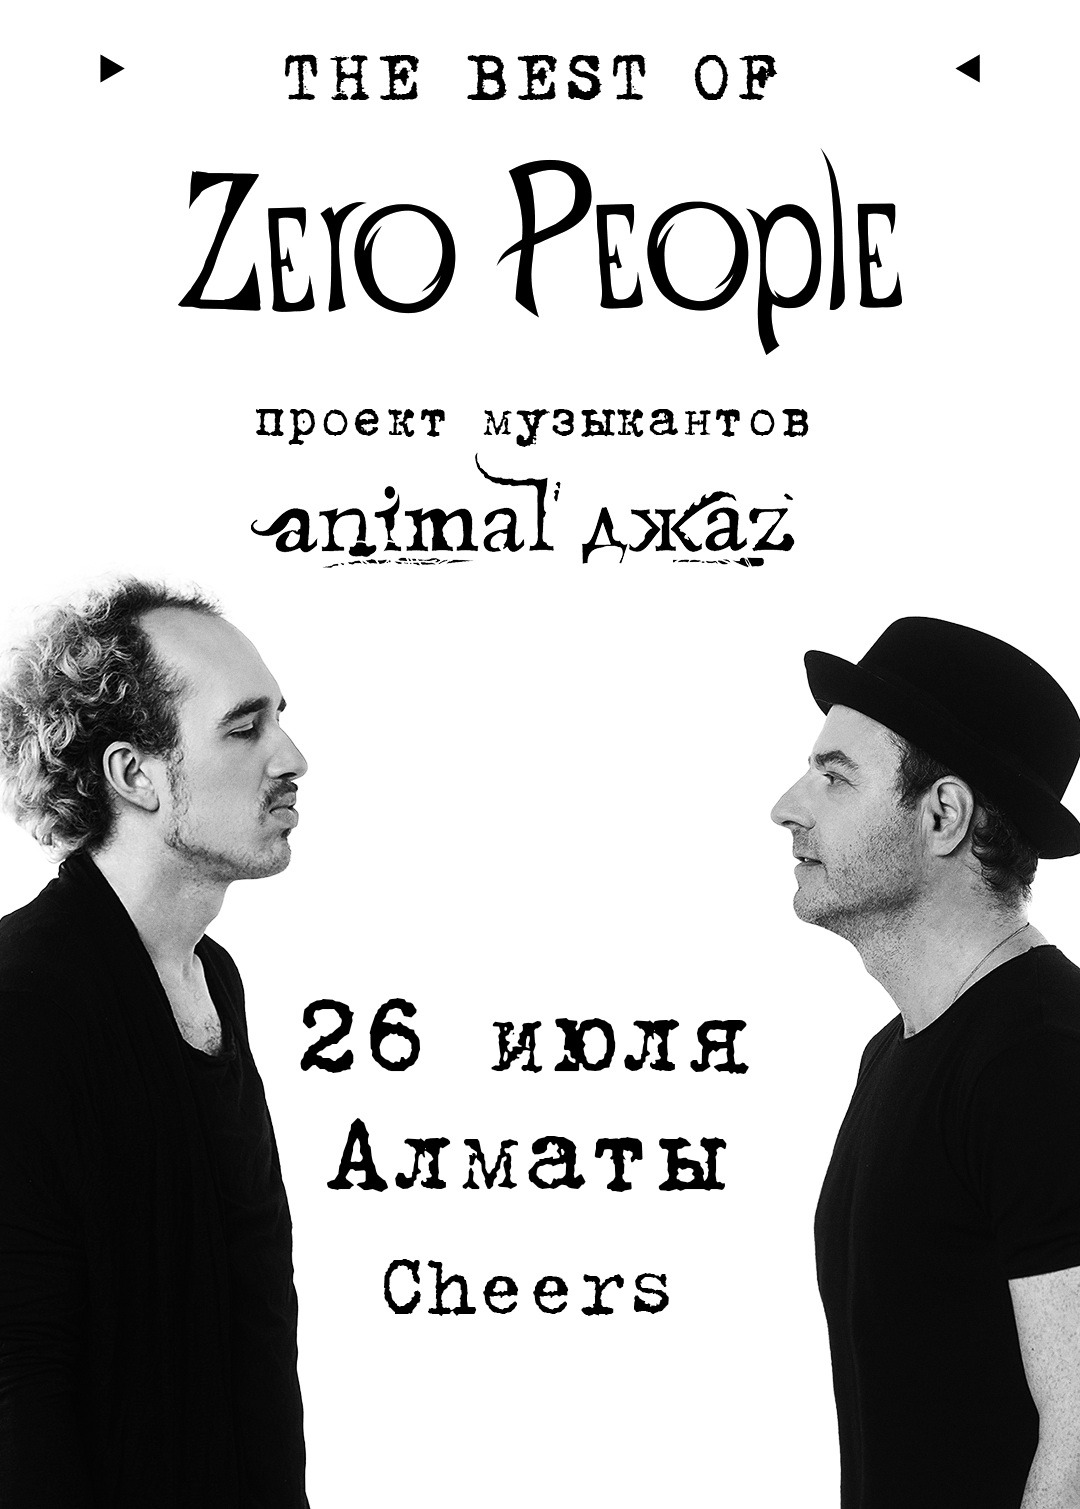 Zero People